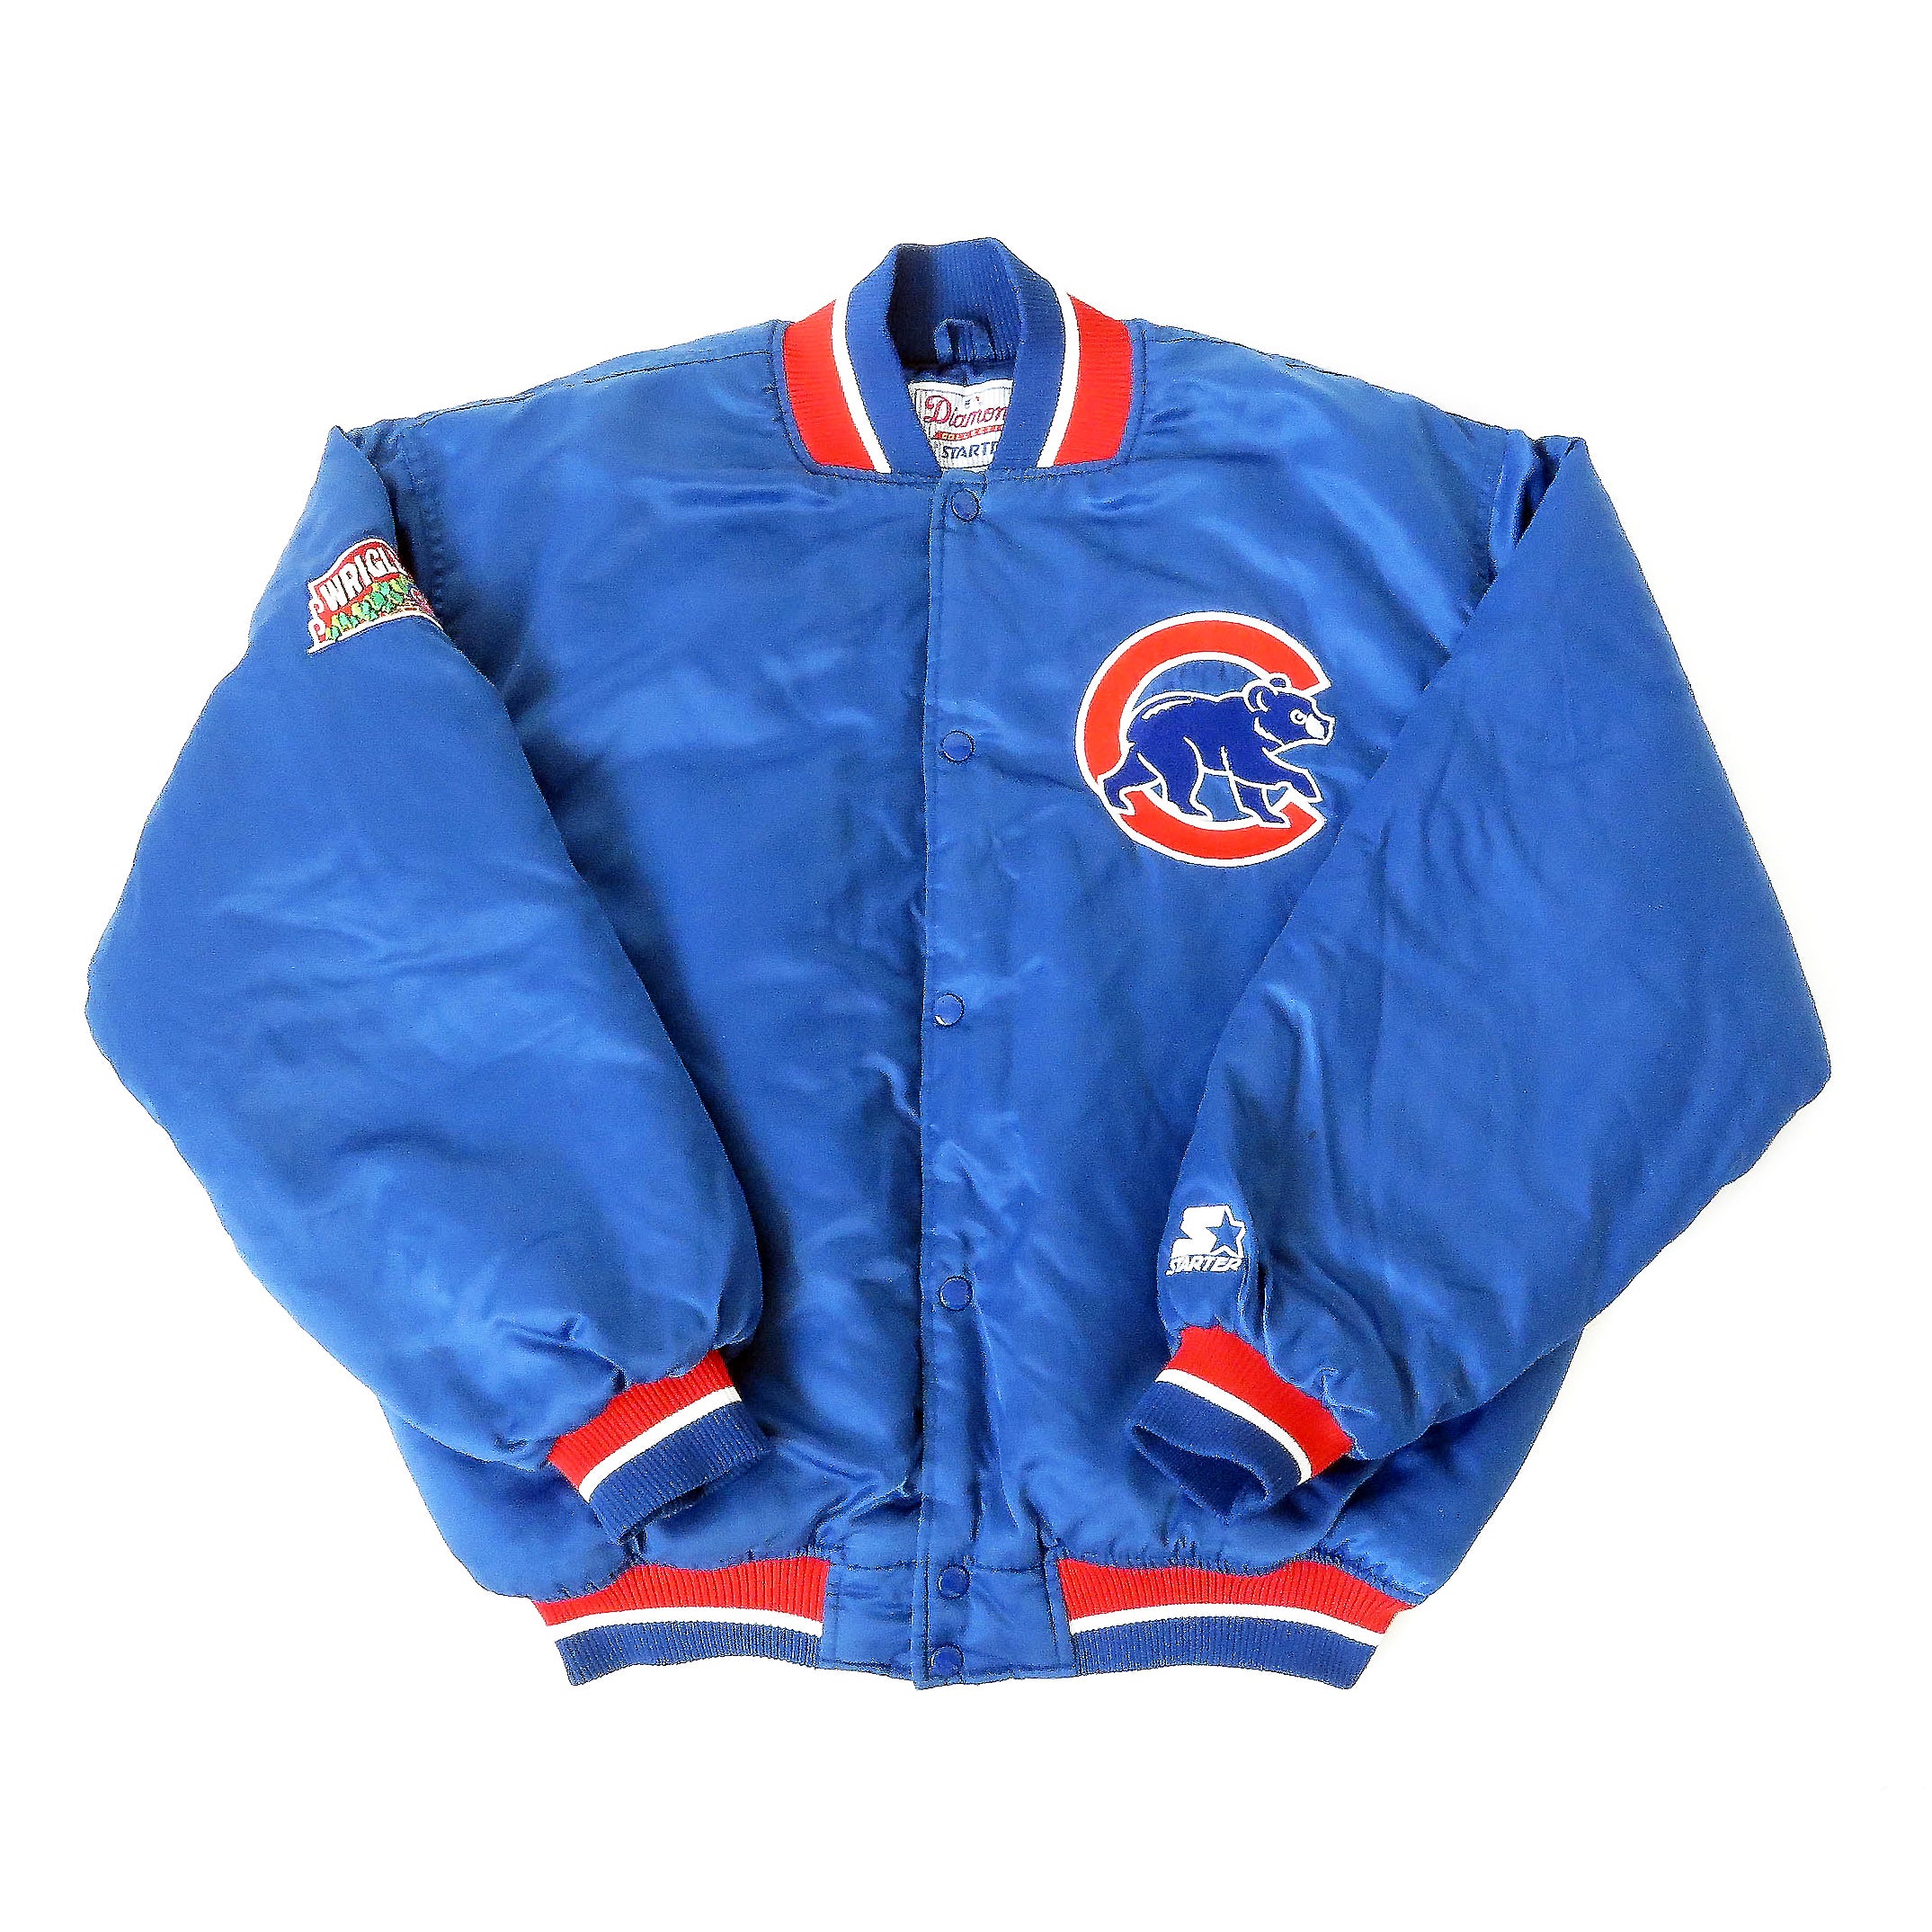 Vintage Chicago Cubs Starter Jacket Sz L